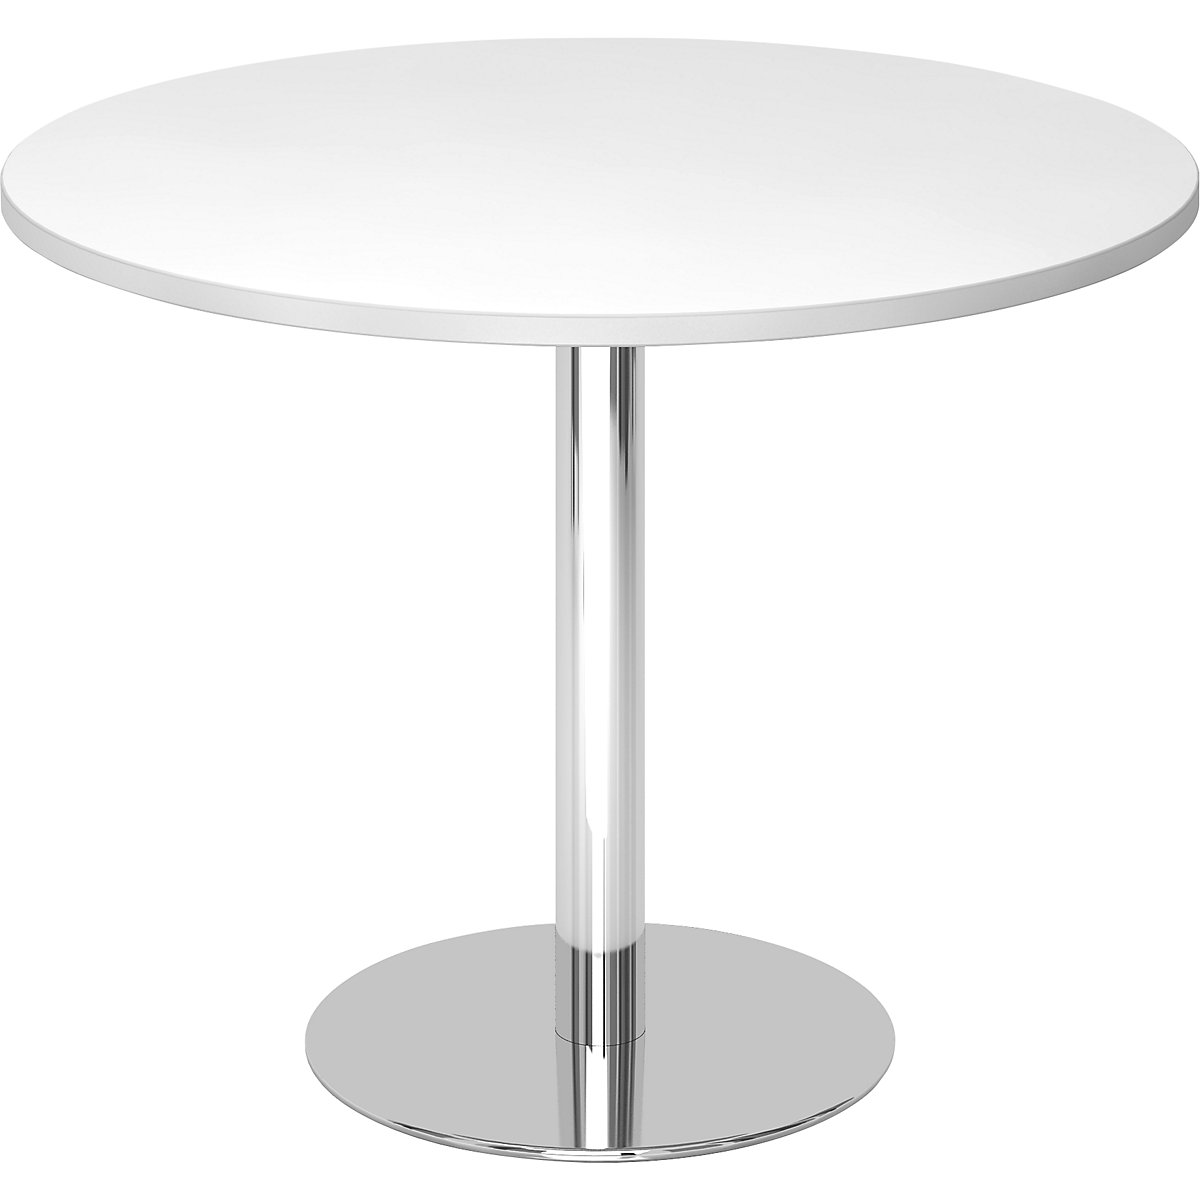 Rokovací stôl, Ø 1000 mm, výška 755 mm, stojan pochrómovaný, doska stola biela-4